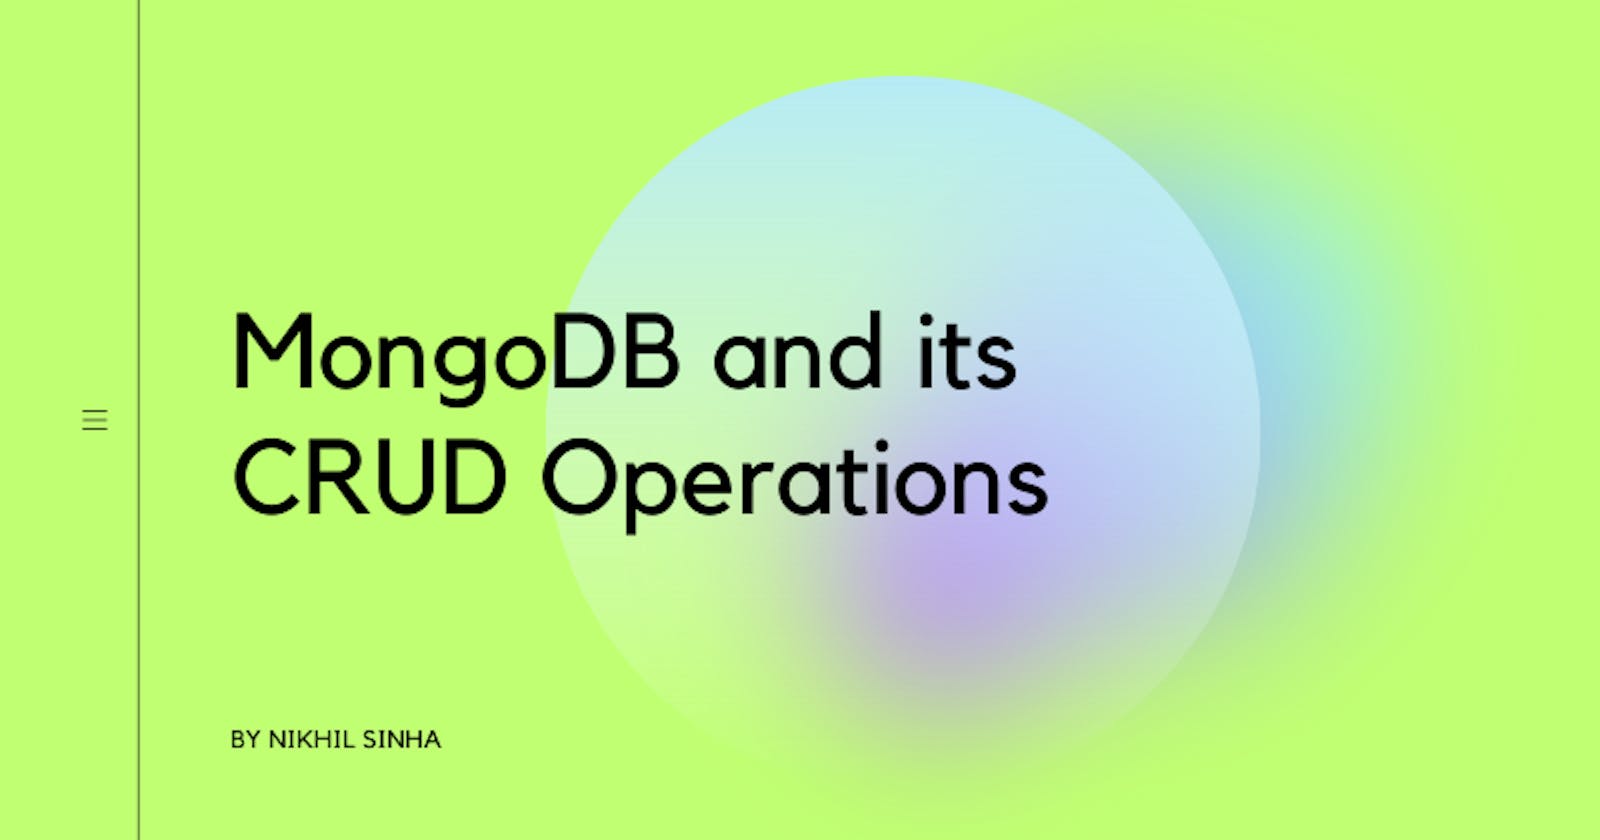 MongoDB 's CRUD Operations